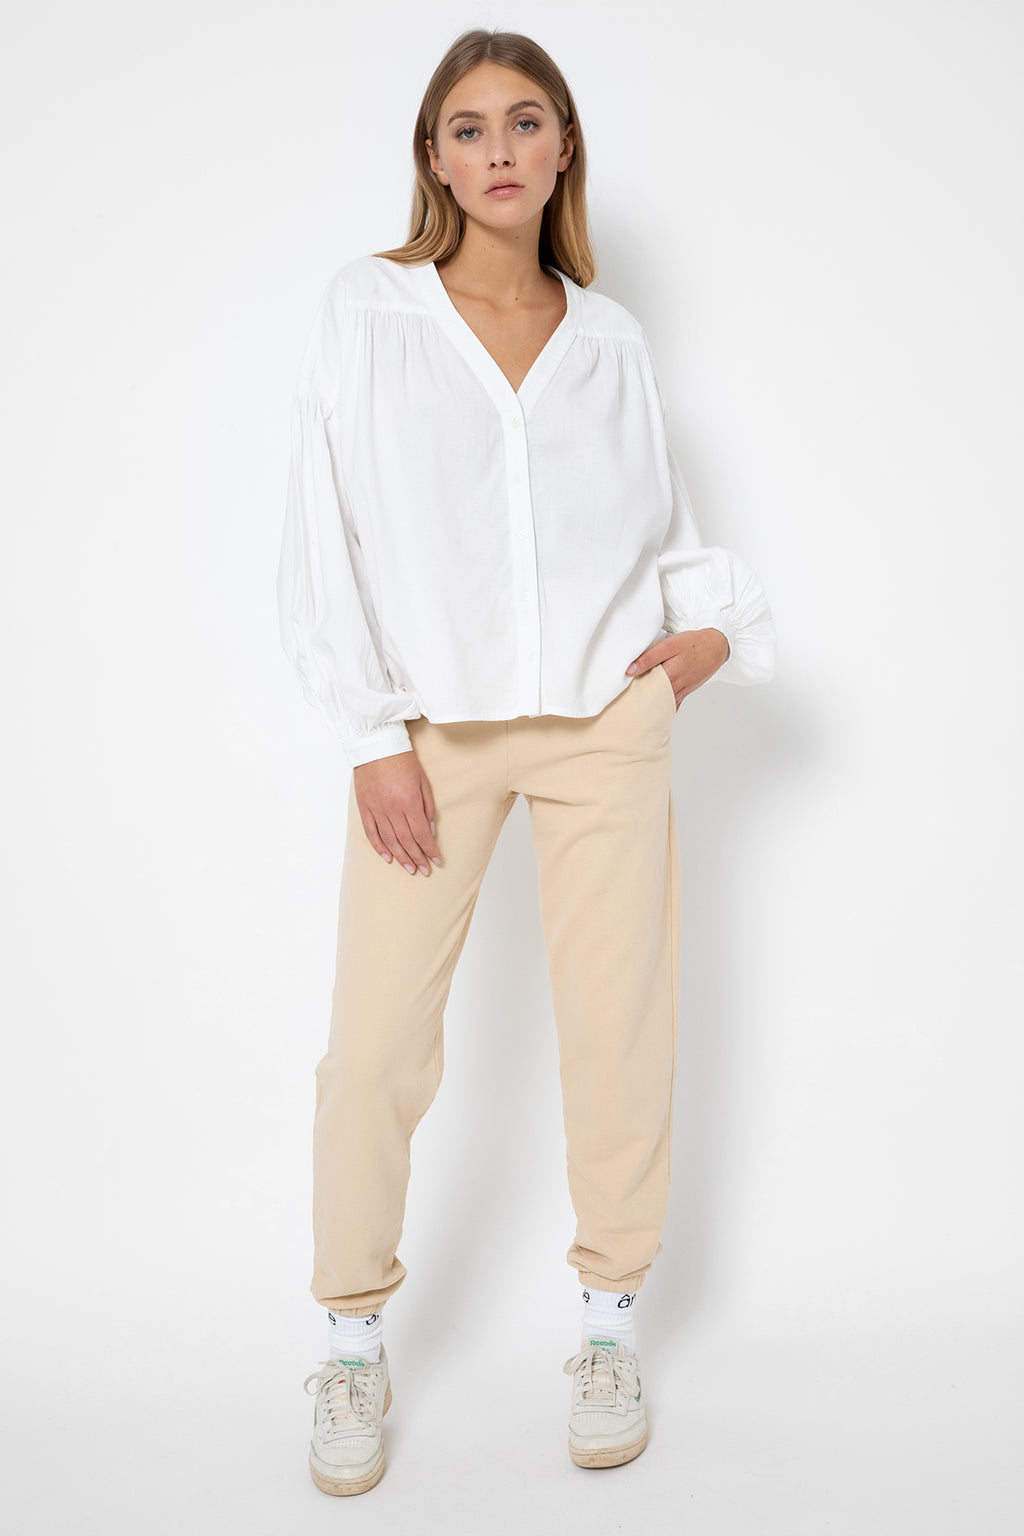 Gante Shirt with Puff Sleeves | White – Âme antwerp